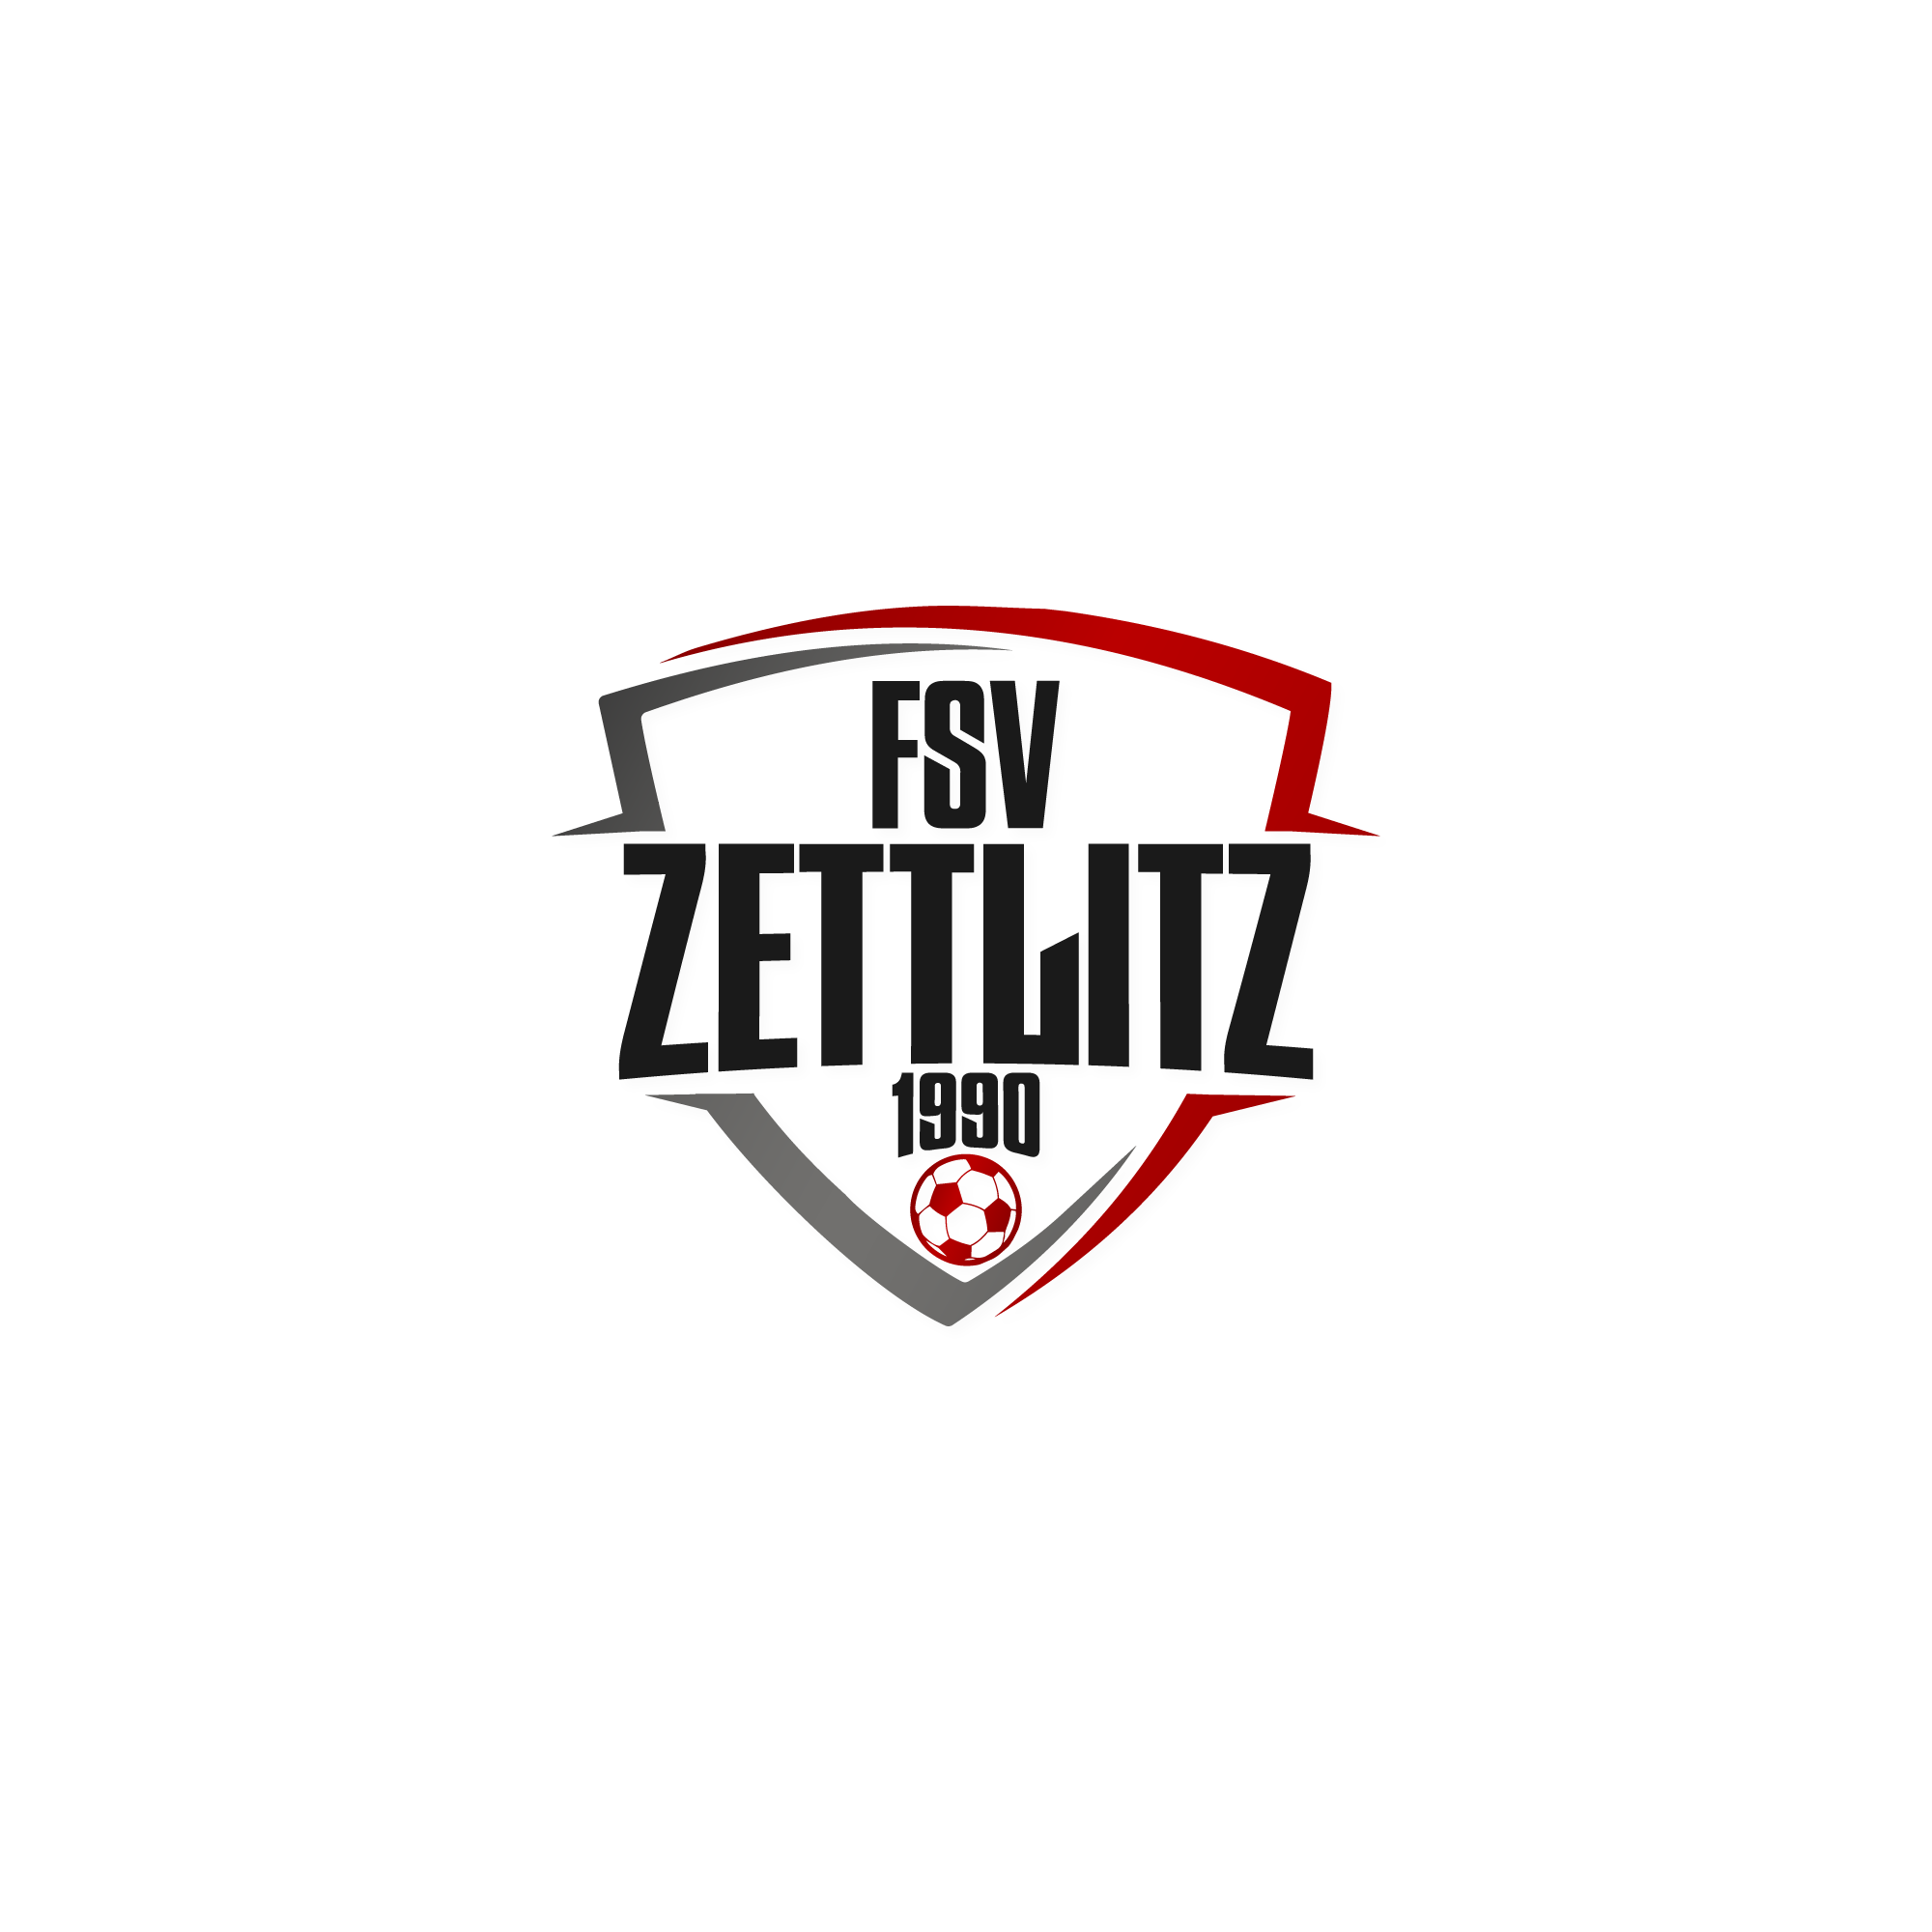 Wappen / Logo des Teams FSV Zettlitz 1990 2